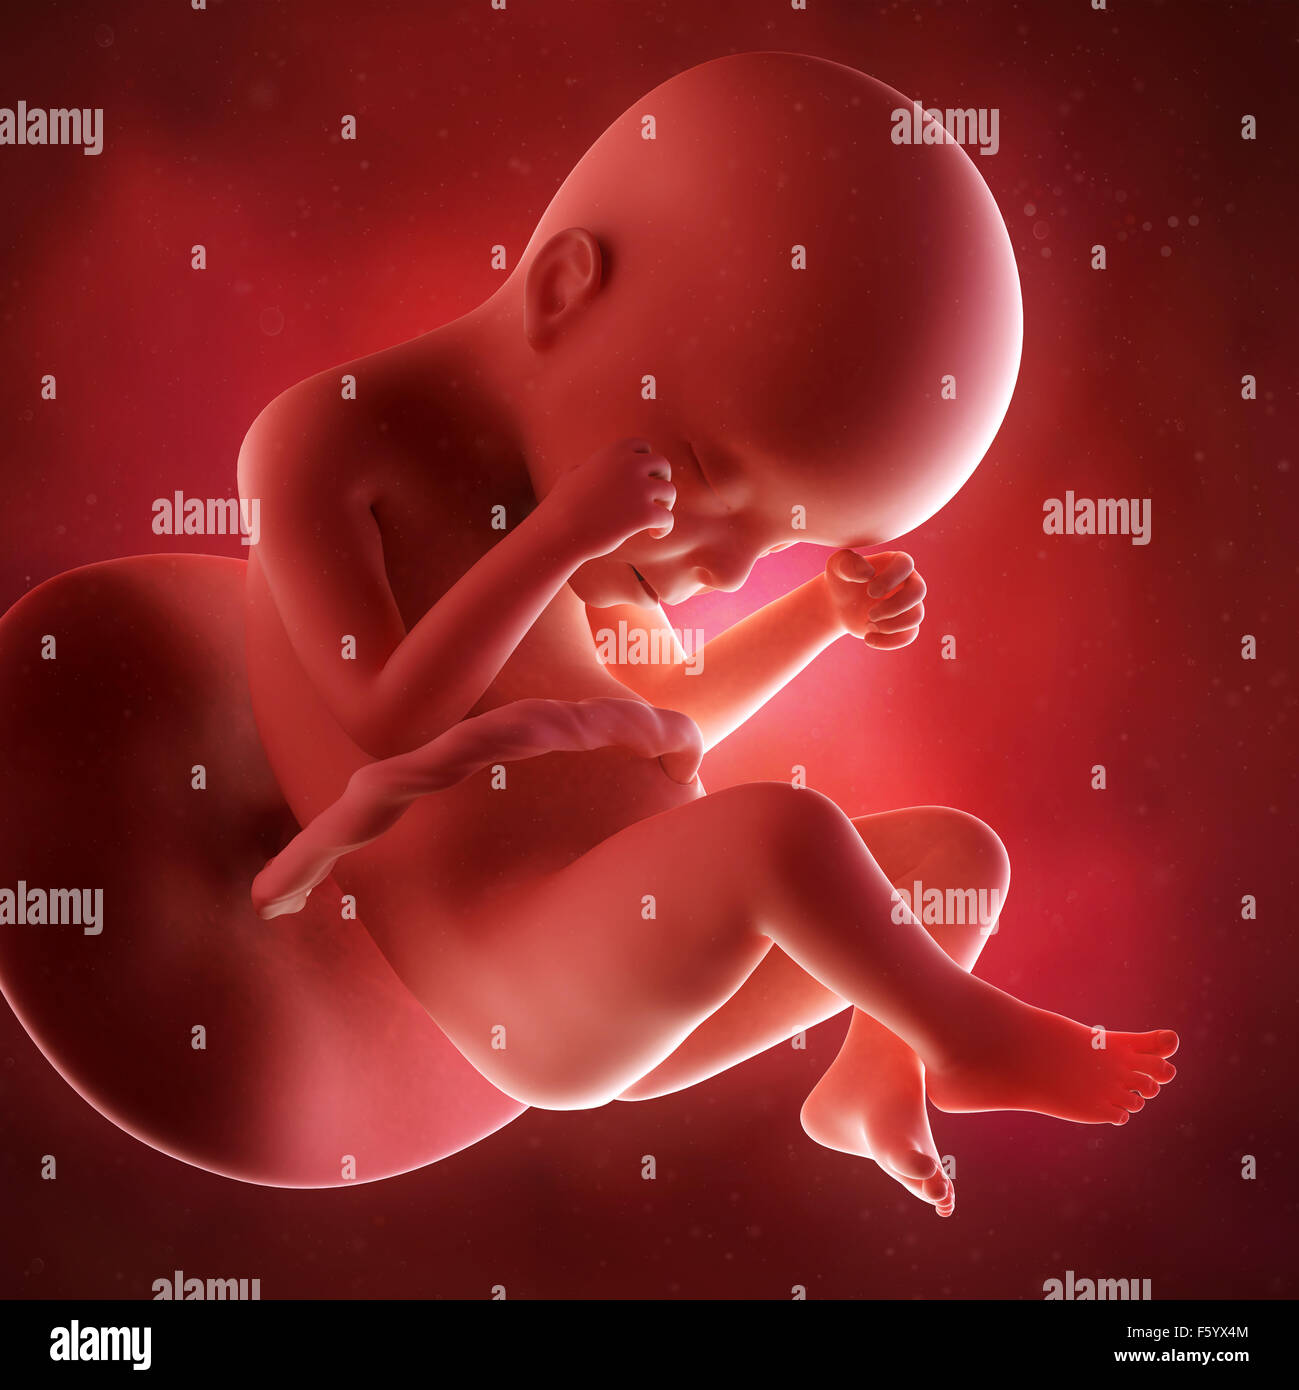 Précision médicale 3d illustration d'un foetus la semaine 24 Banque D'Images